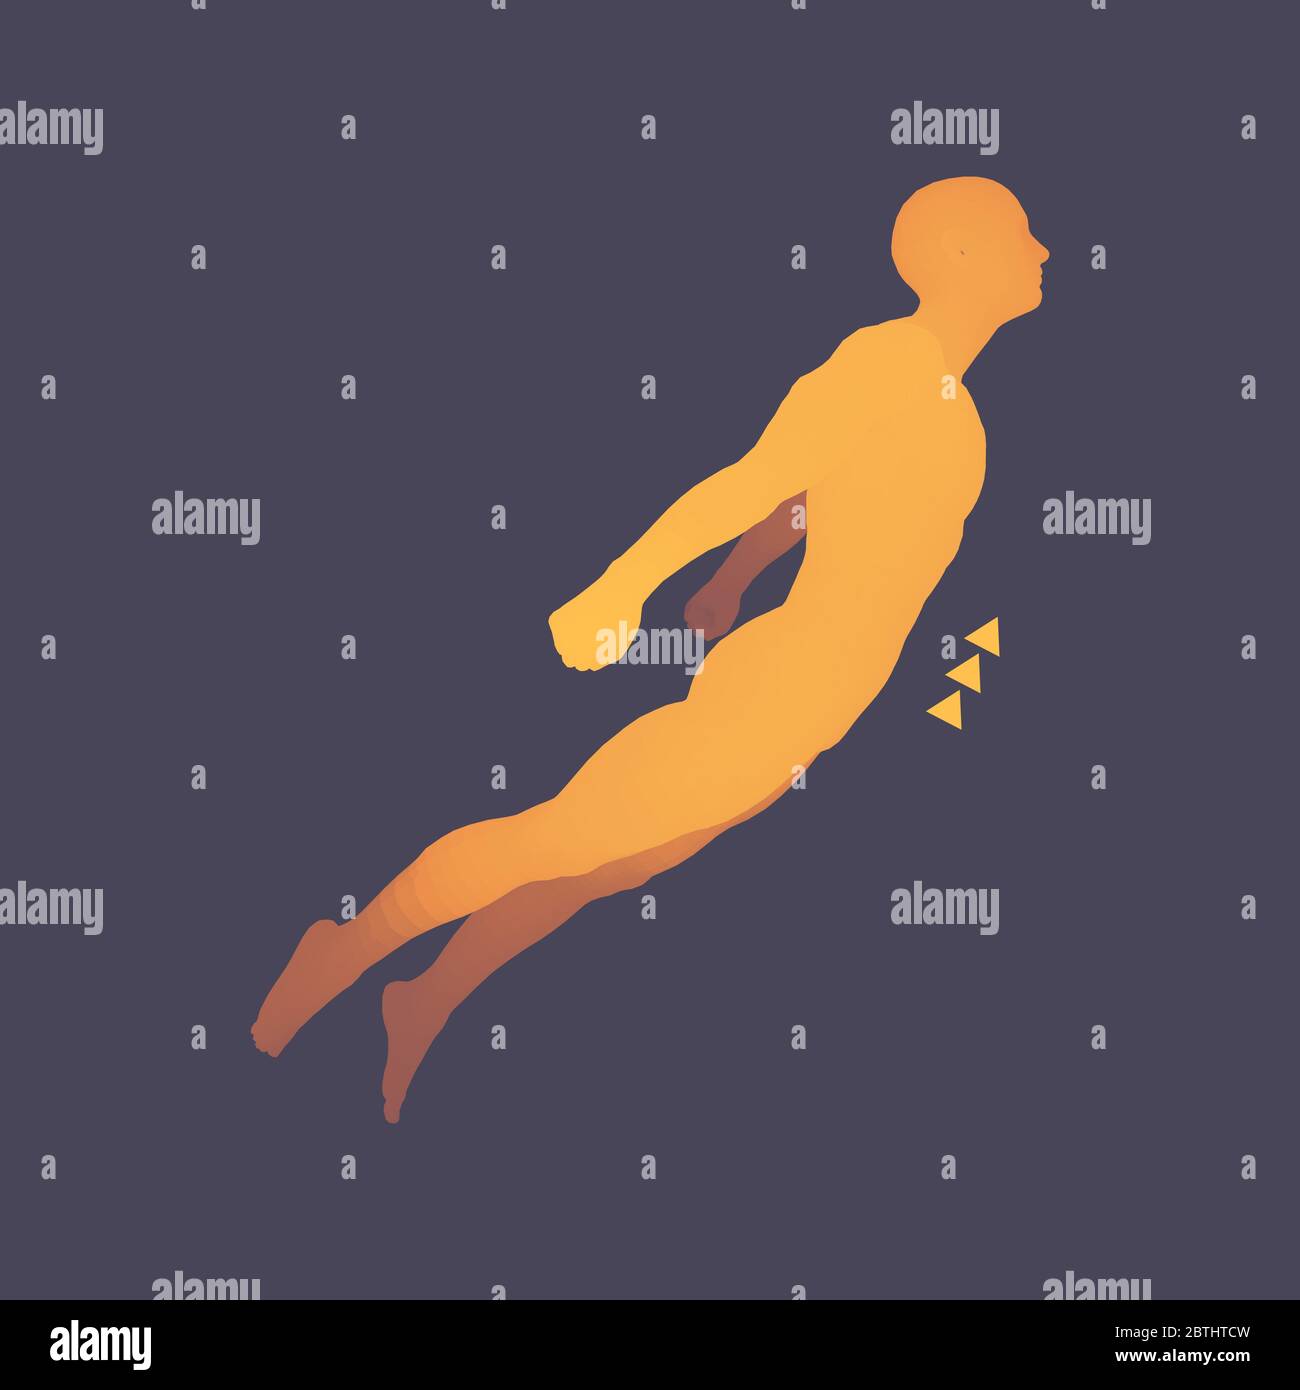 Schweben in der Luft. Menschen, die in der Luft schweben. 3D-Modell des  Menschen. Menschlichen Körper. Design Element. Vector Illustration  Stock-Vektorgrafik - Alamy